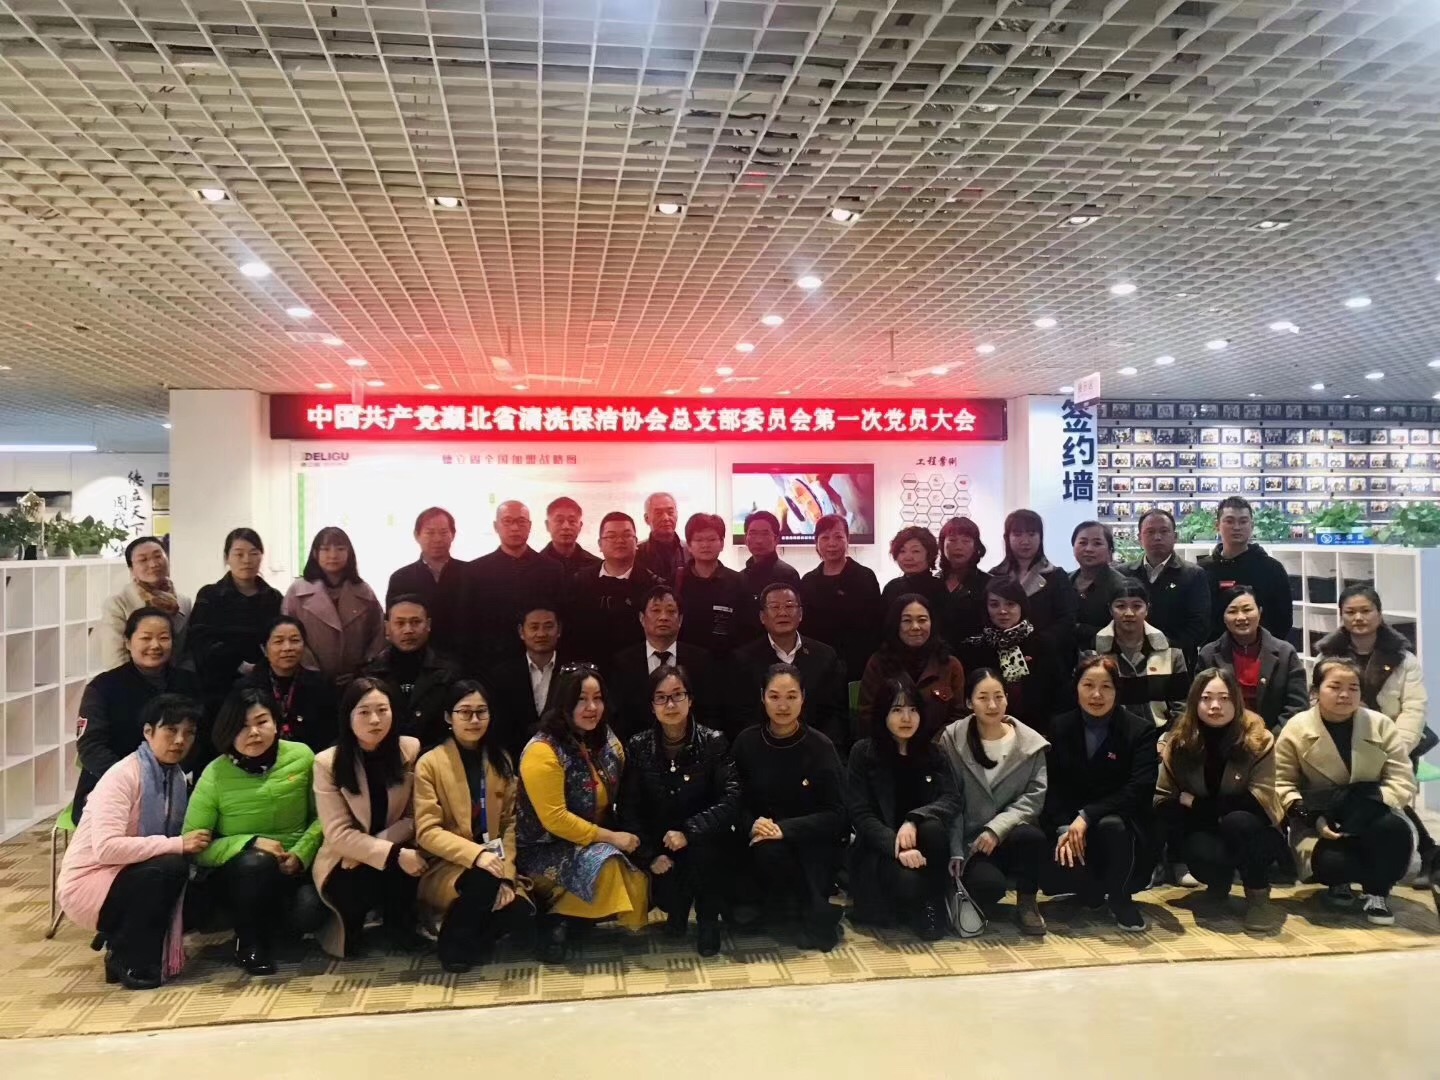 热烈祝贺湖北省清洗保洁行业协会第一次党员大会在齐峰物业中心顺利召开